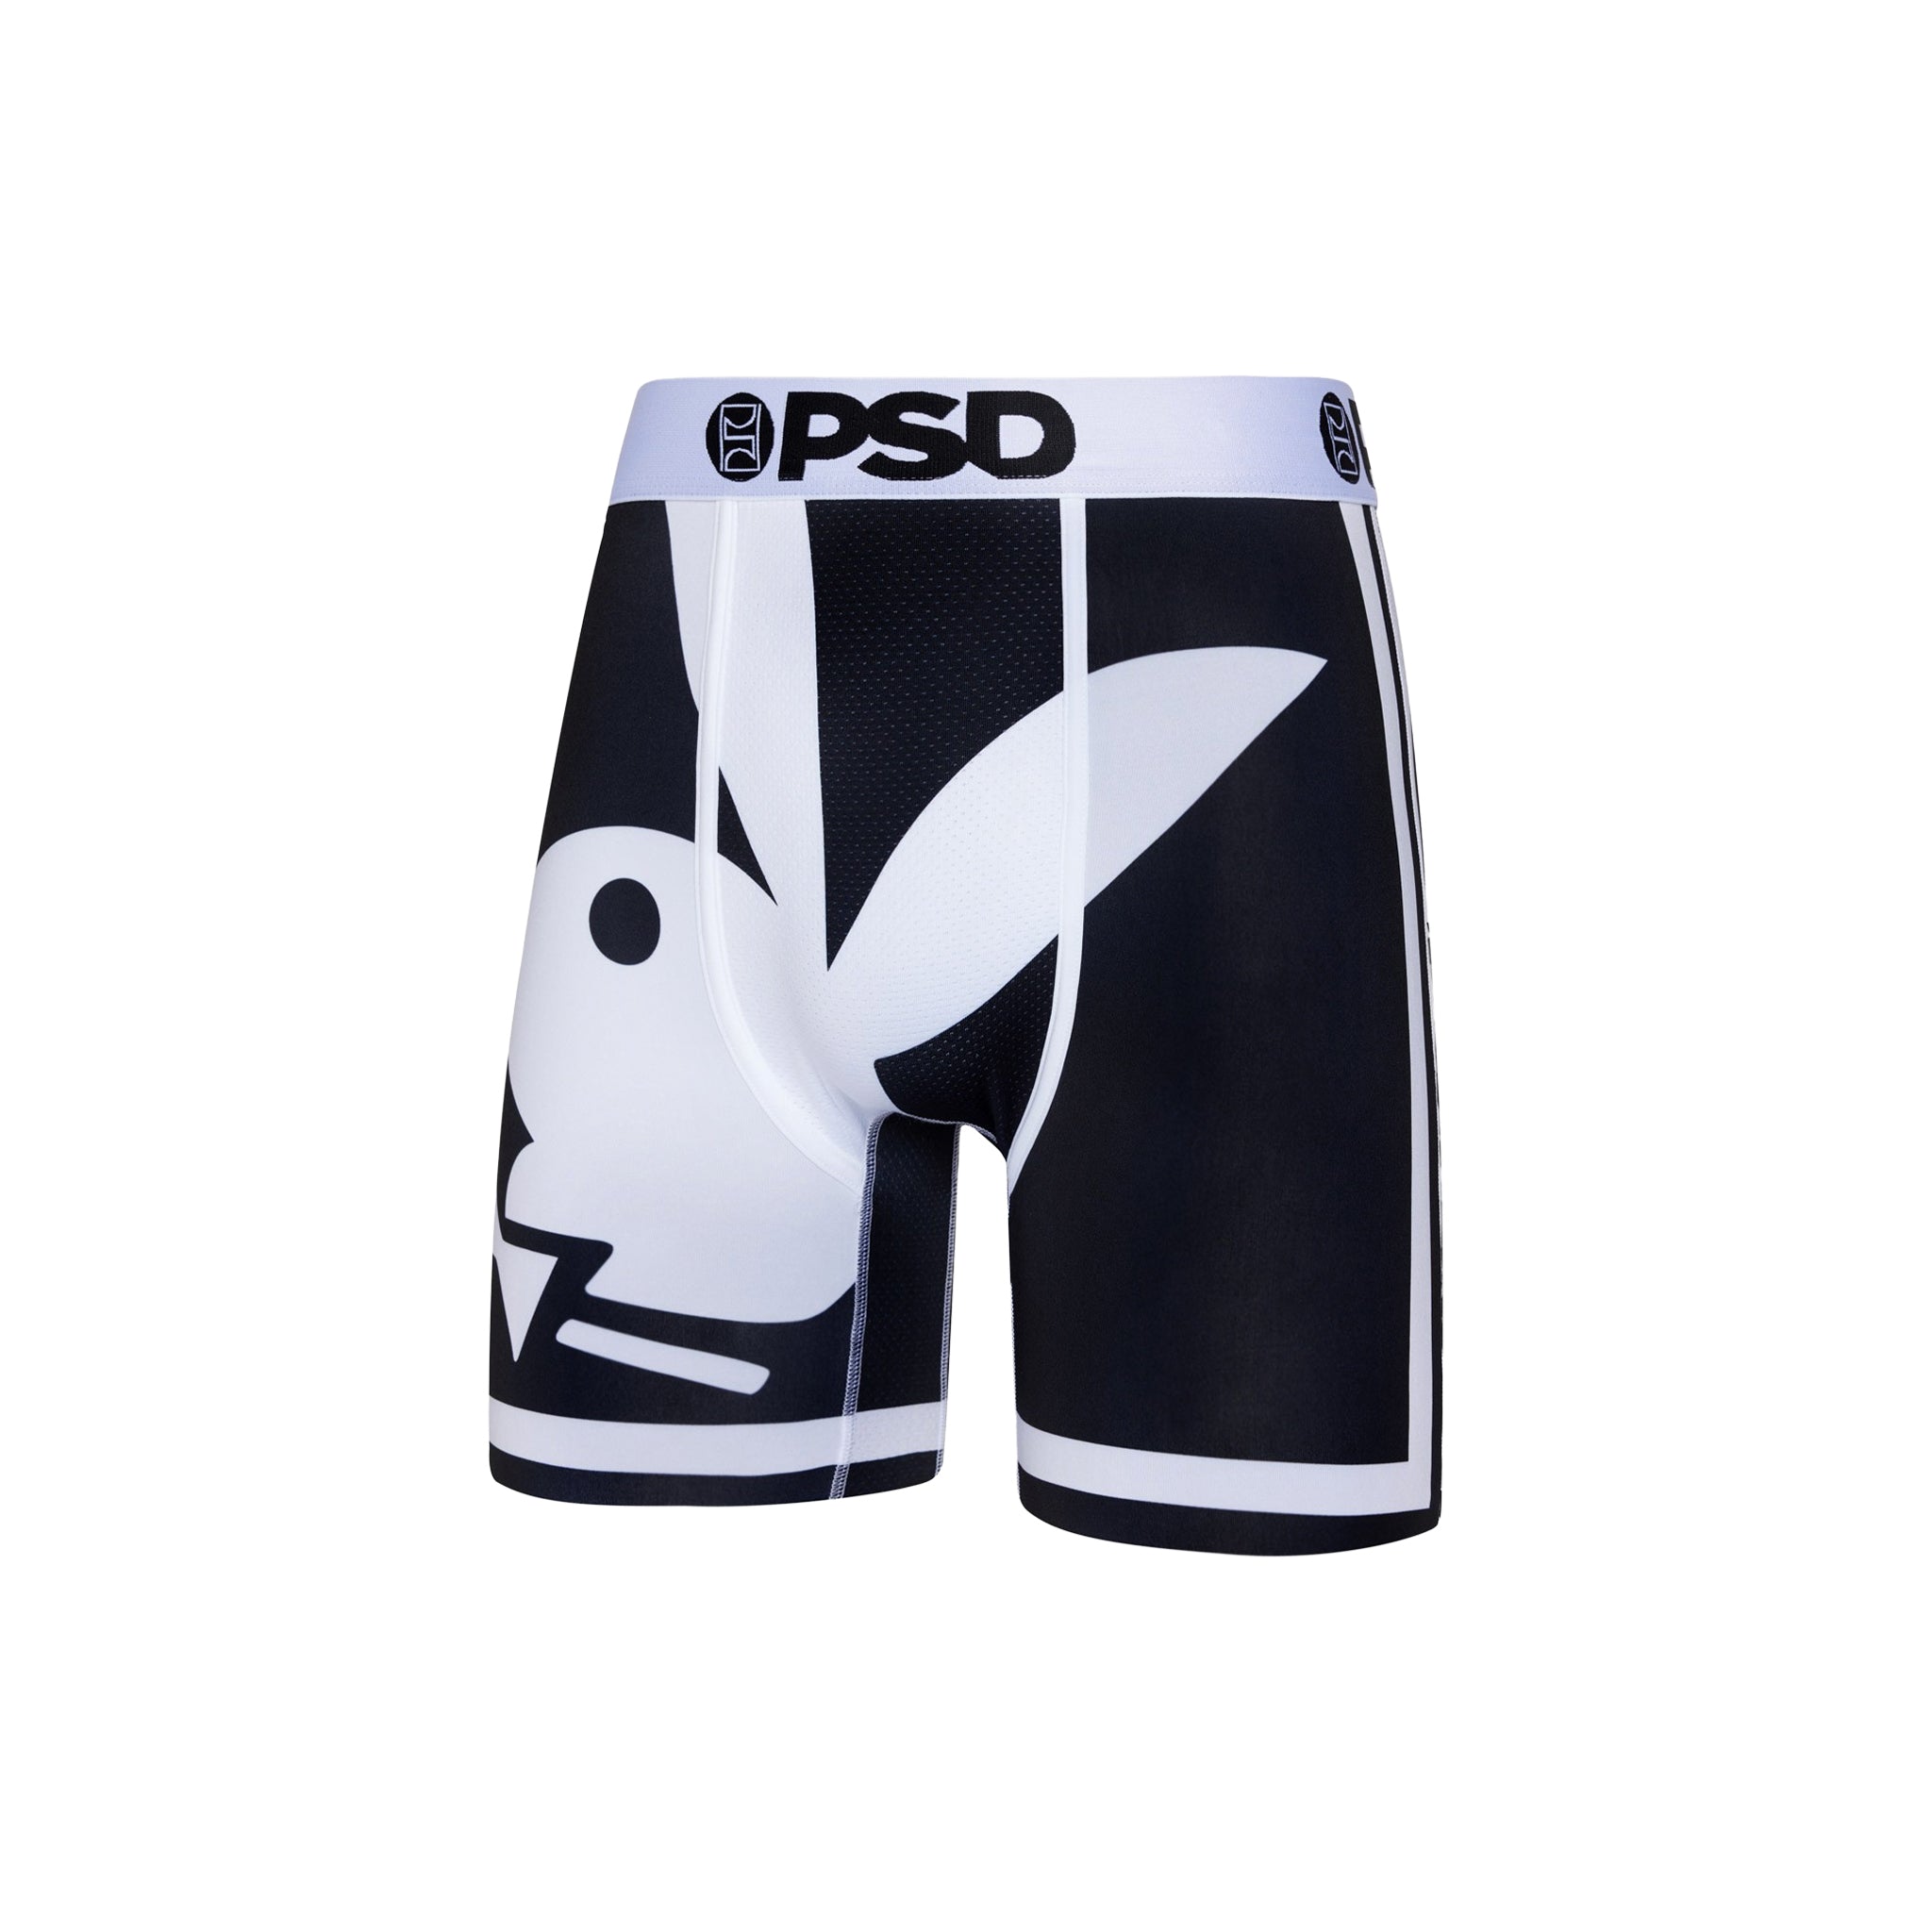 PSD "Big Bunny" Underwear